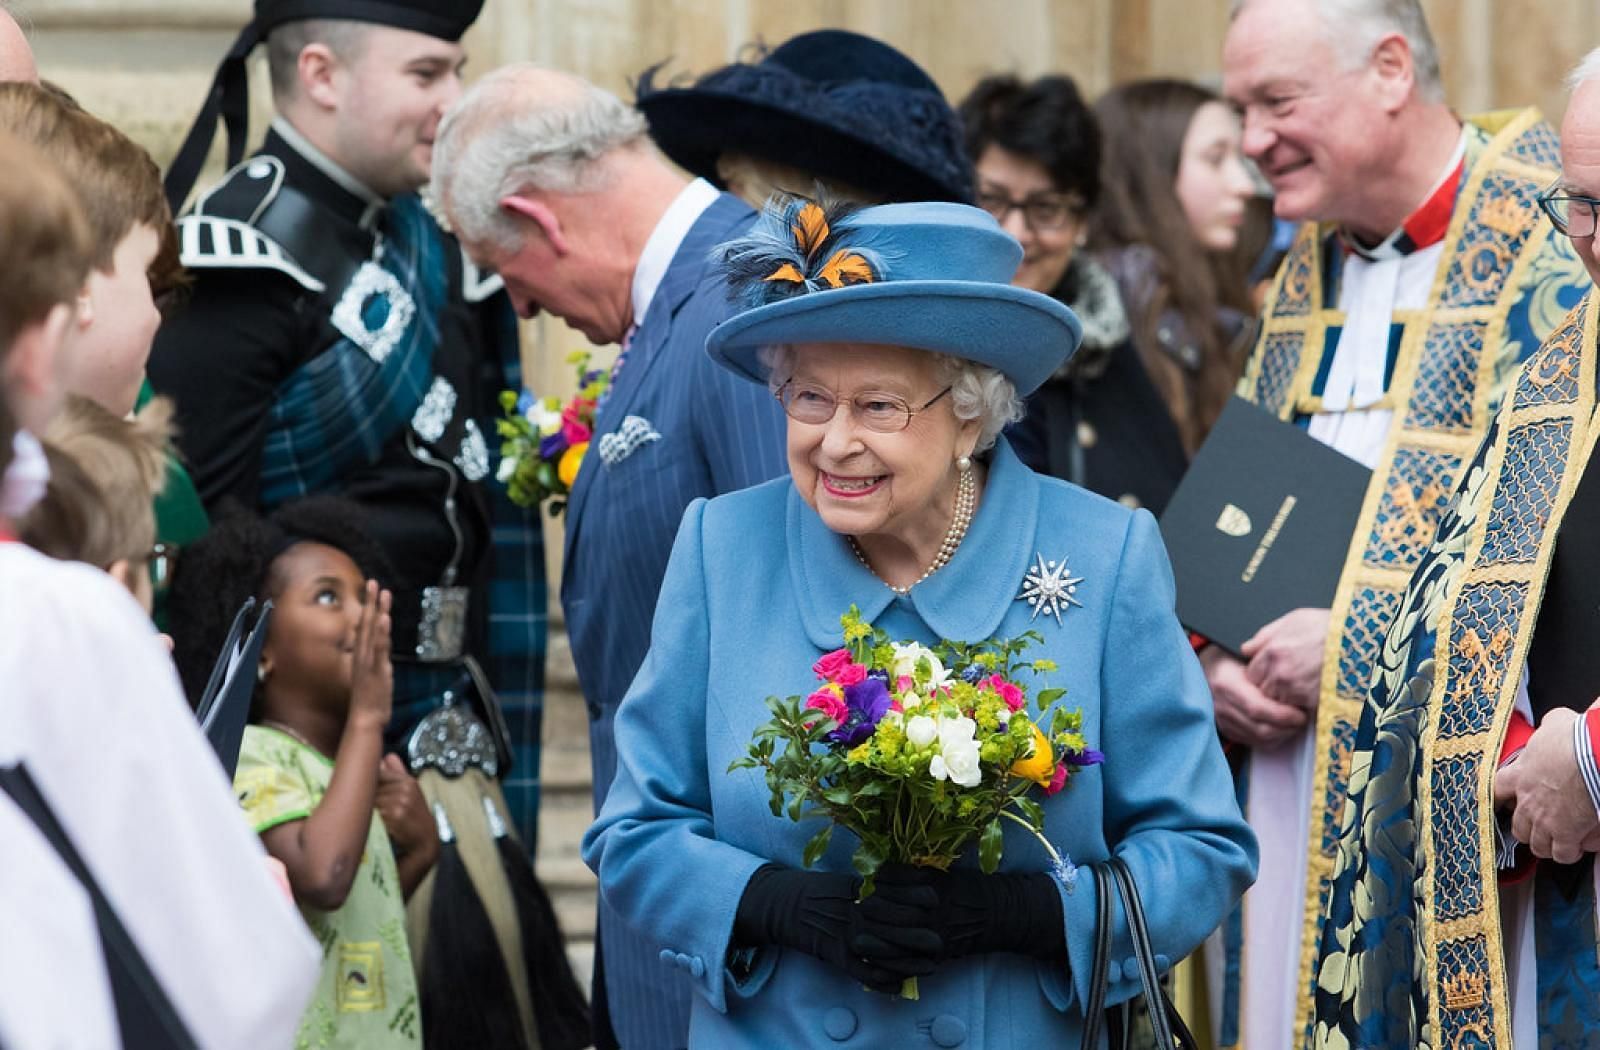 Queen Elizabeth II (Image via Commonwealth Secratariat)